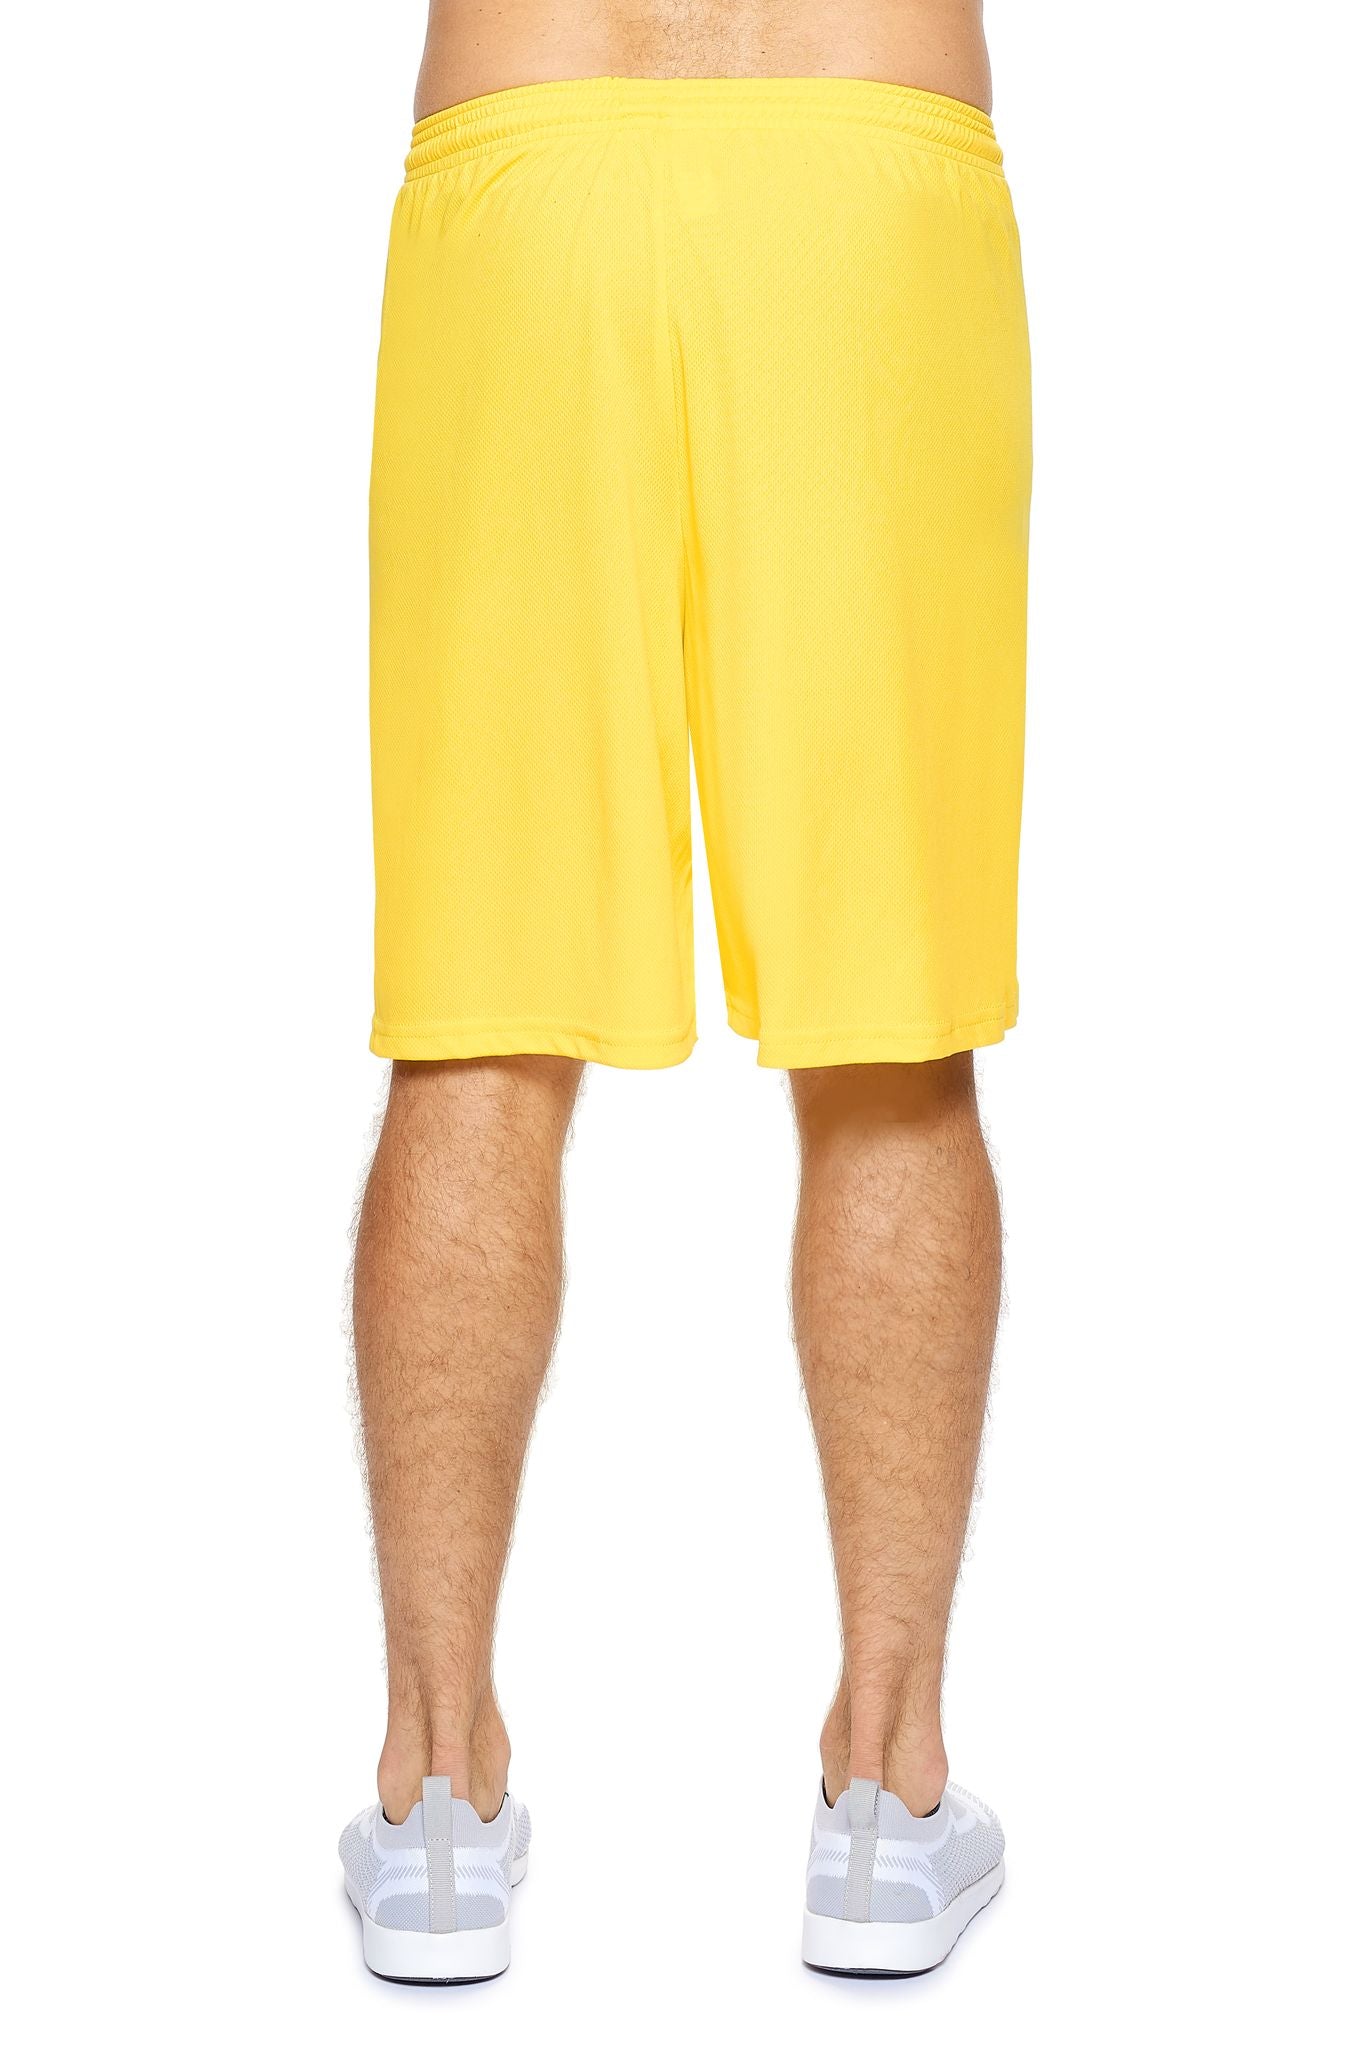 Expert Brand Men's Bright Yellow Oxymesh™ Training Shorts Image 3#bright-yellow